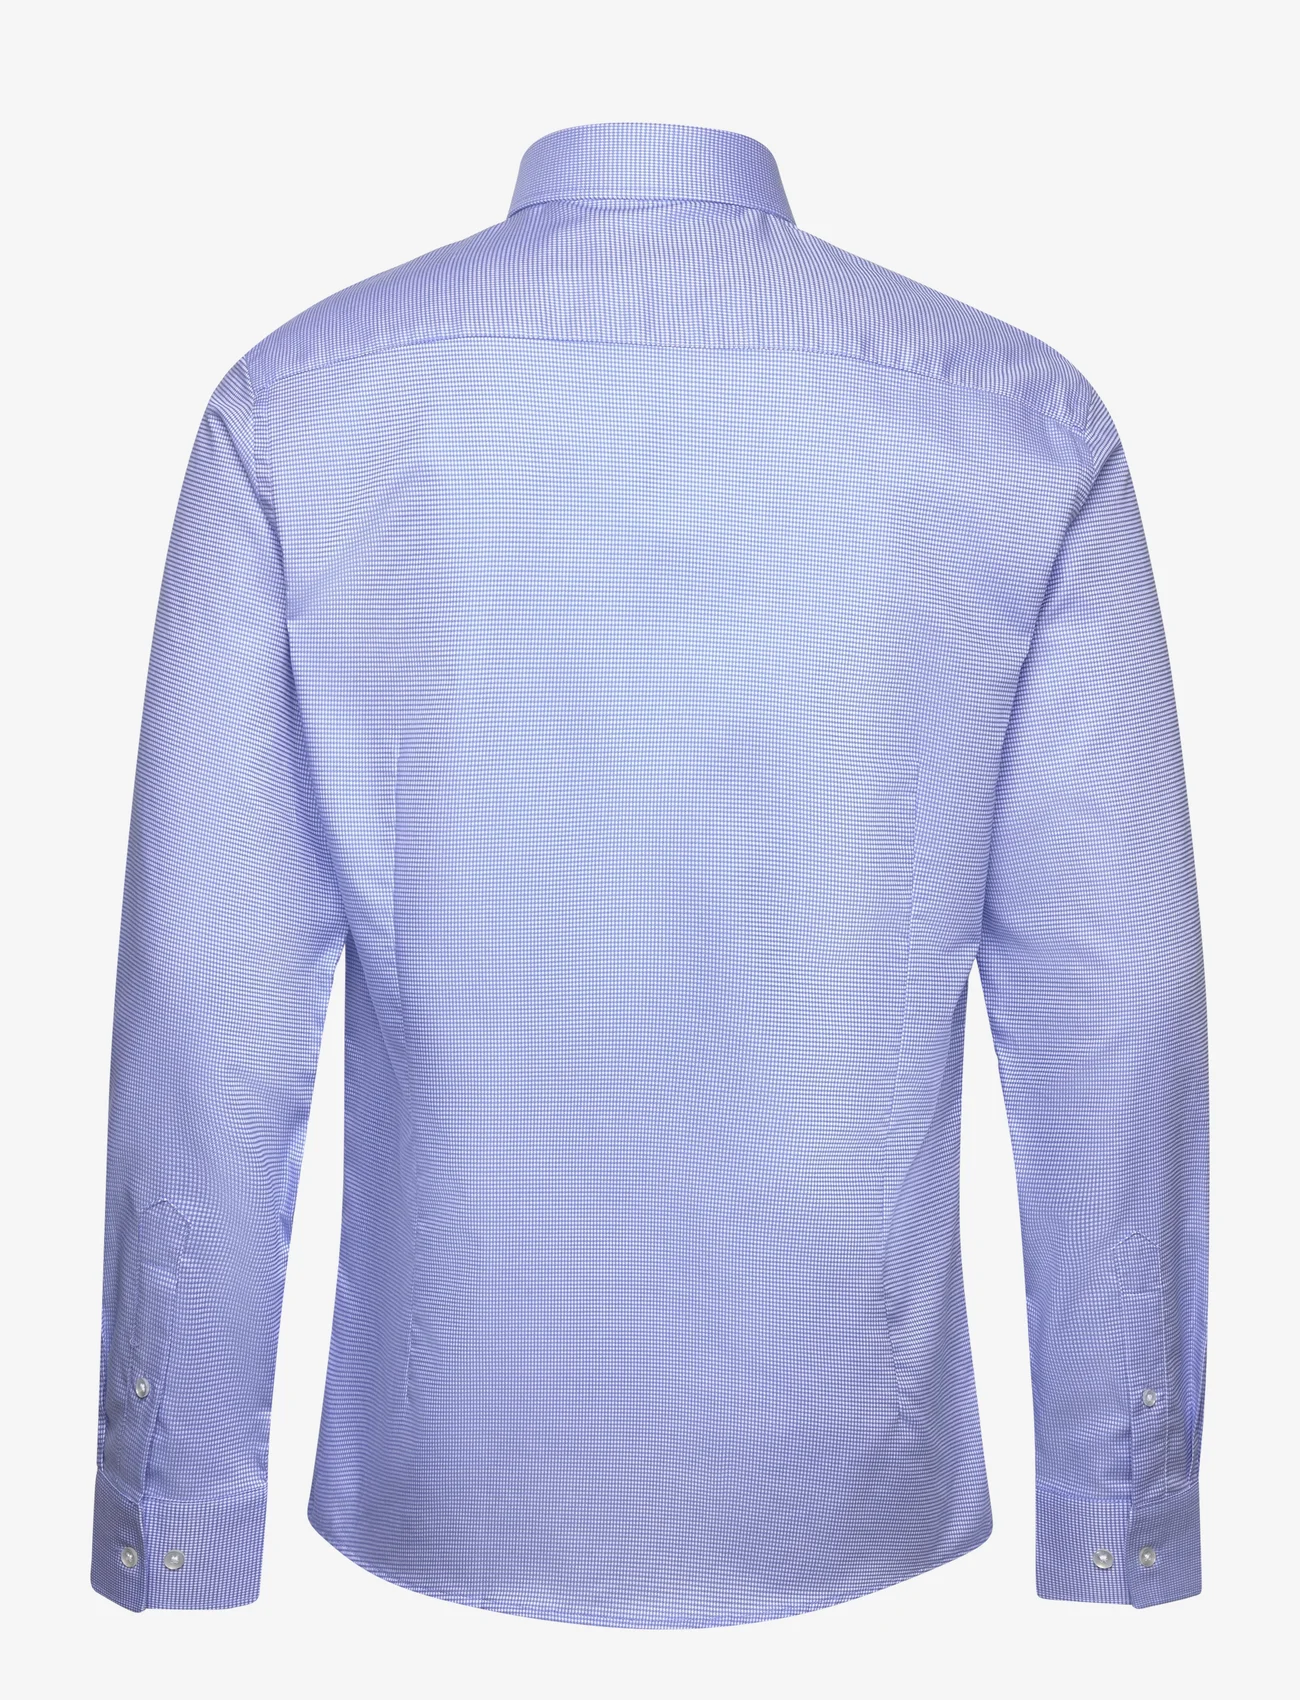 Bruun & Stengade - BS Young Slim Fit Shirt - formele overhemden - blue - 1